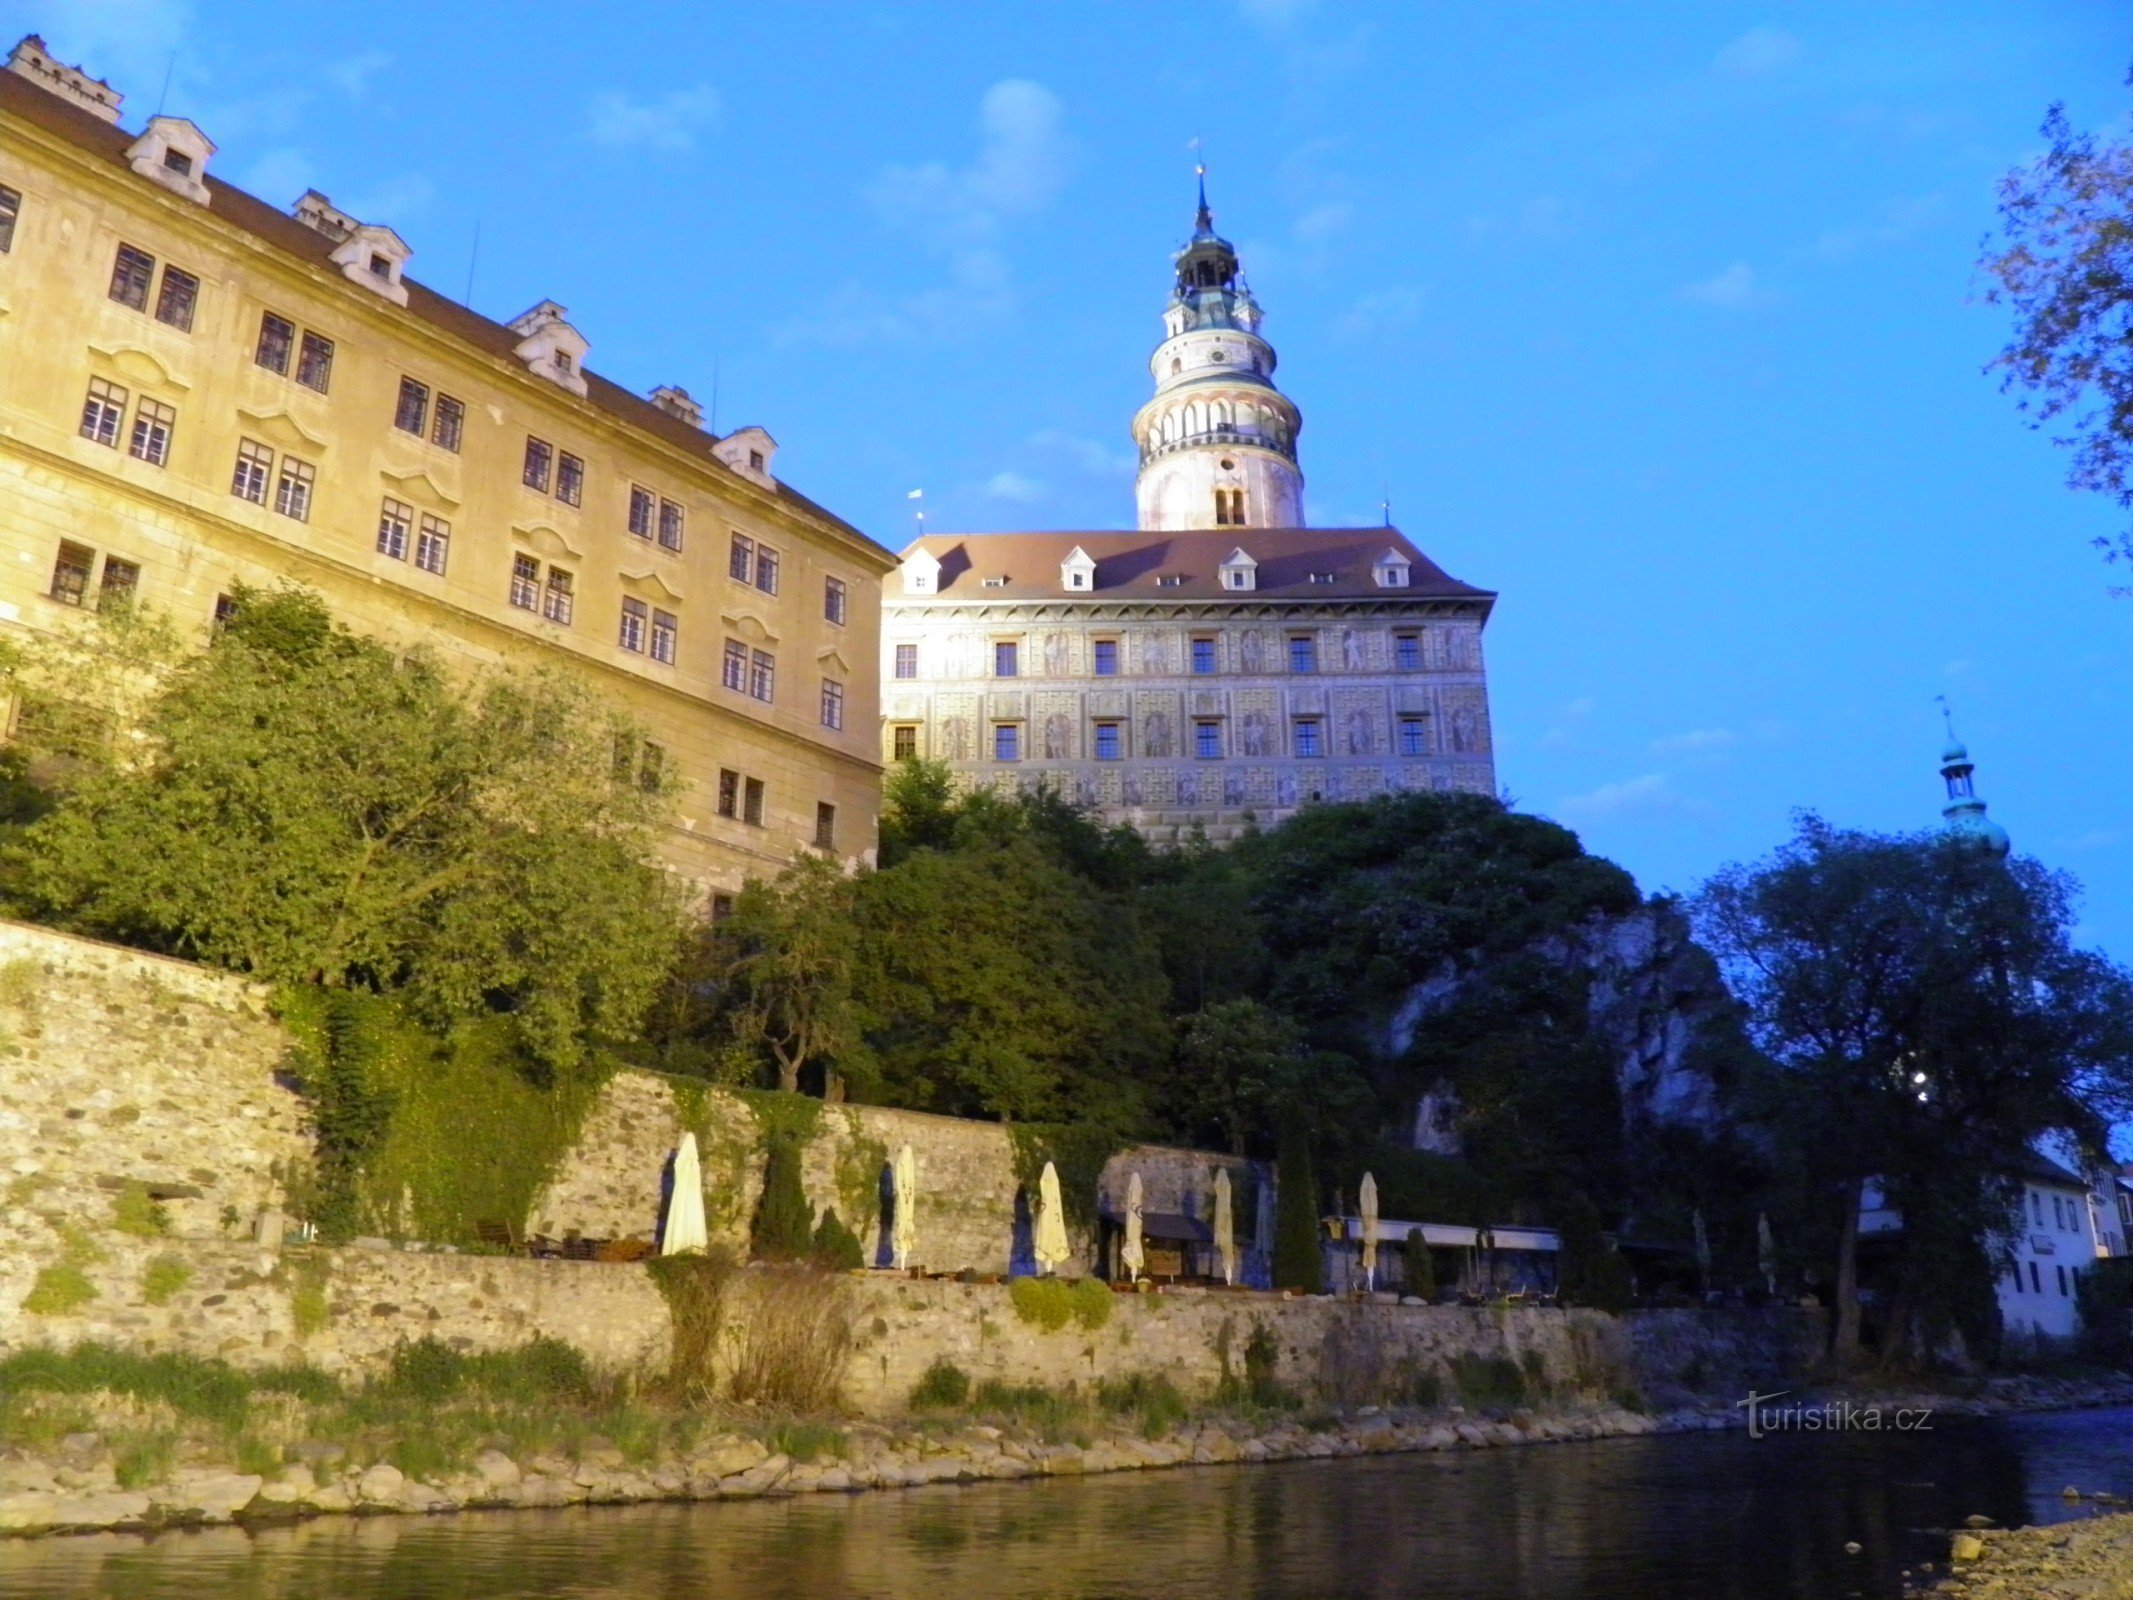 Kasteel en kasteel aan de Moldau.